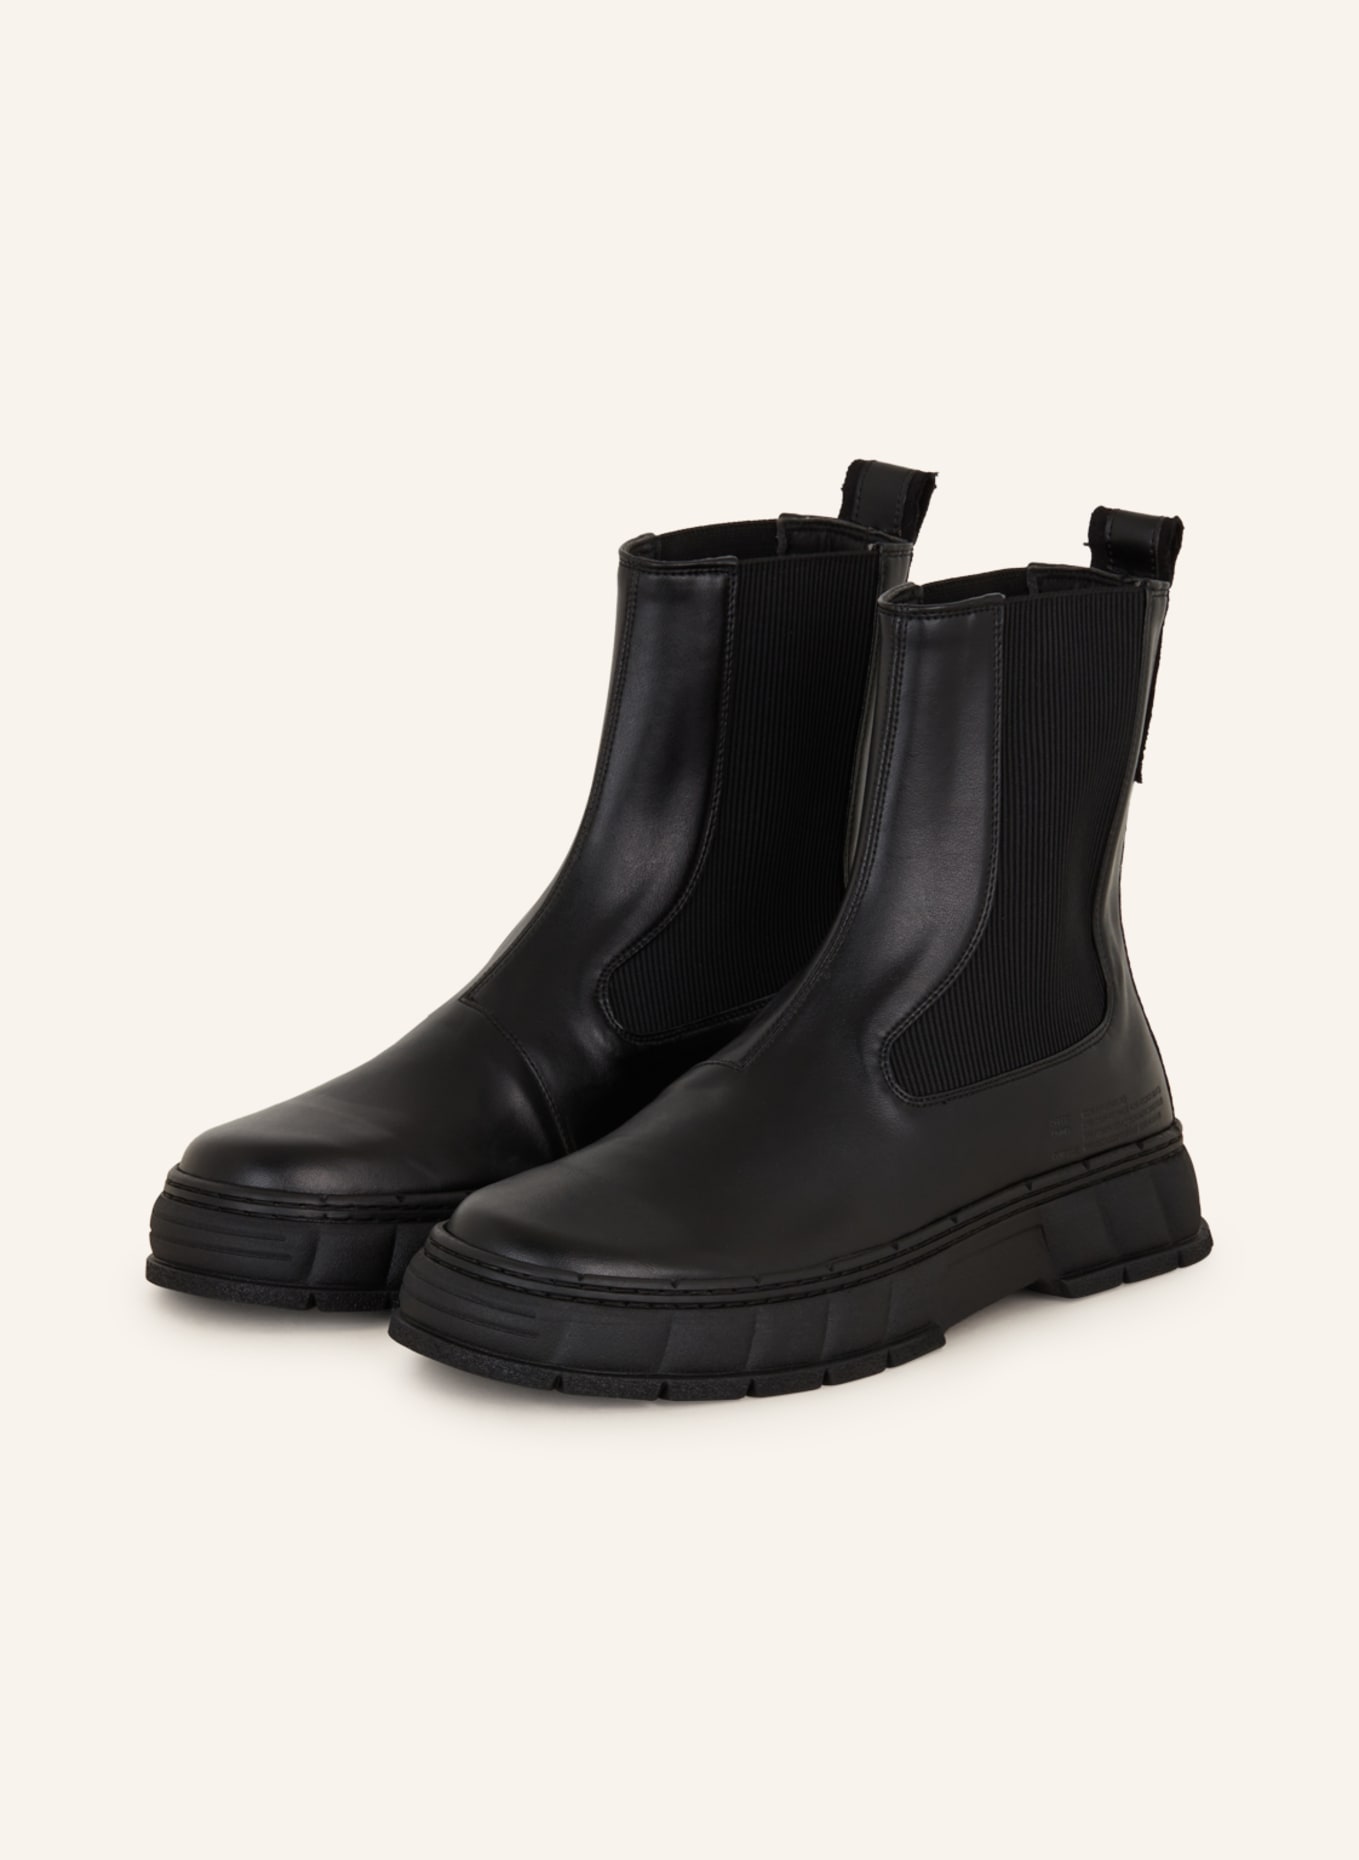 VIRÒN  boots 1997, Color: BLACK (Image 1)